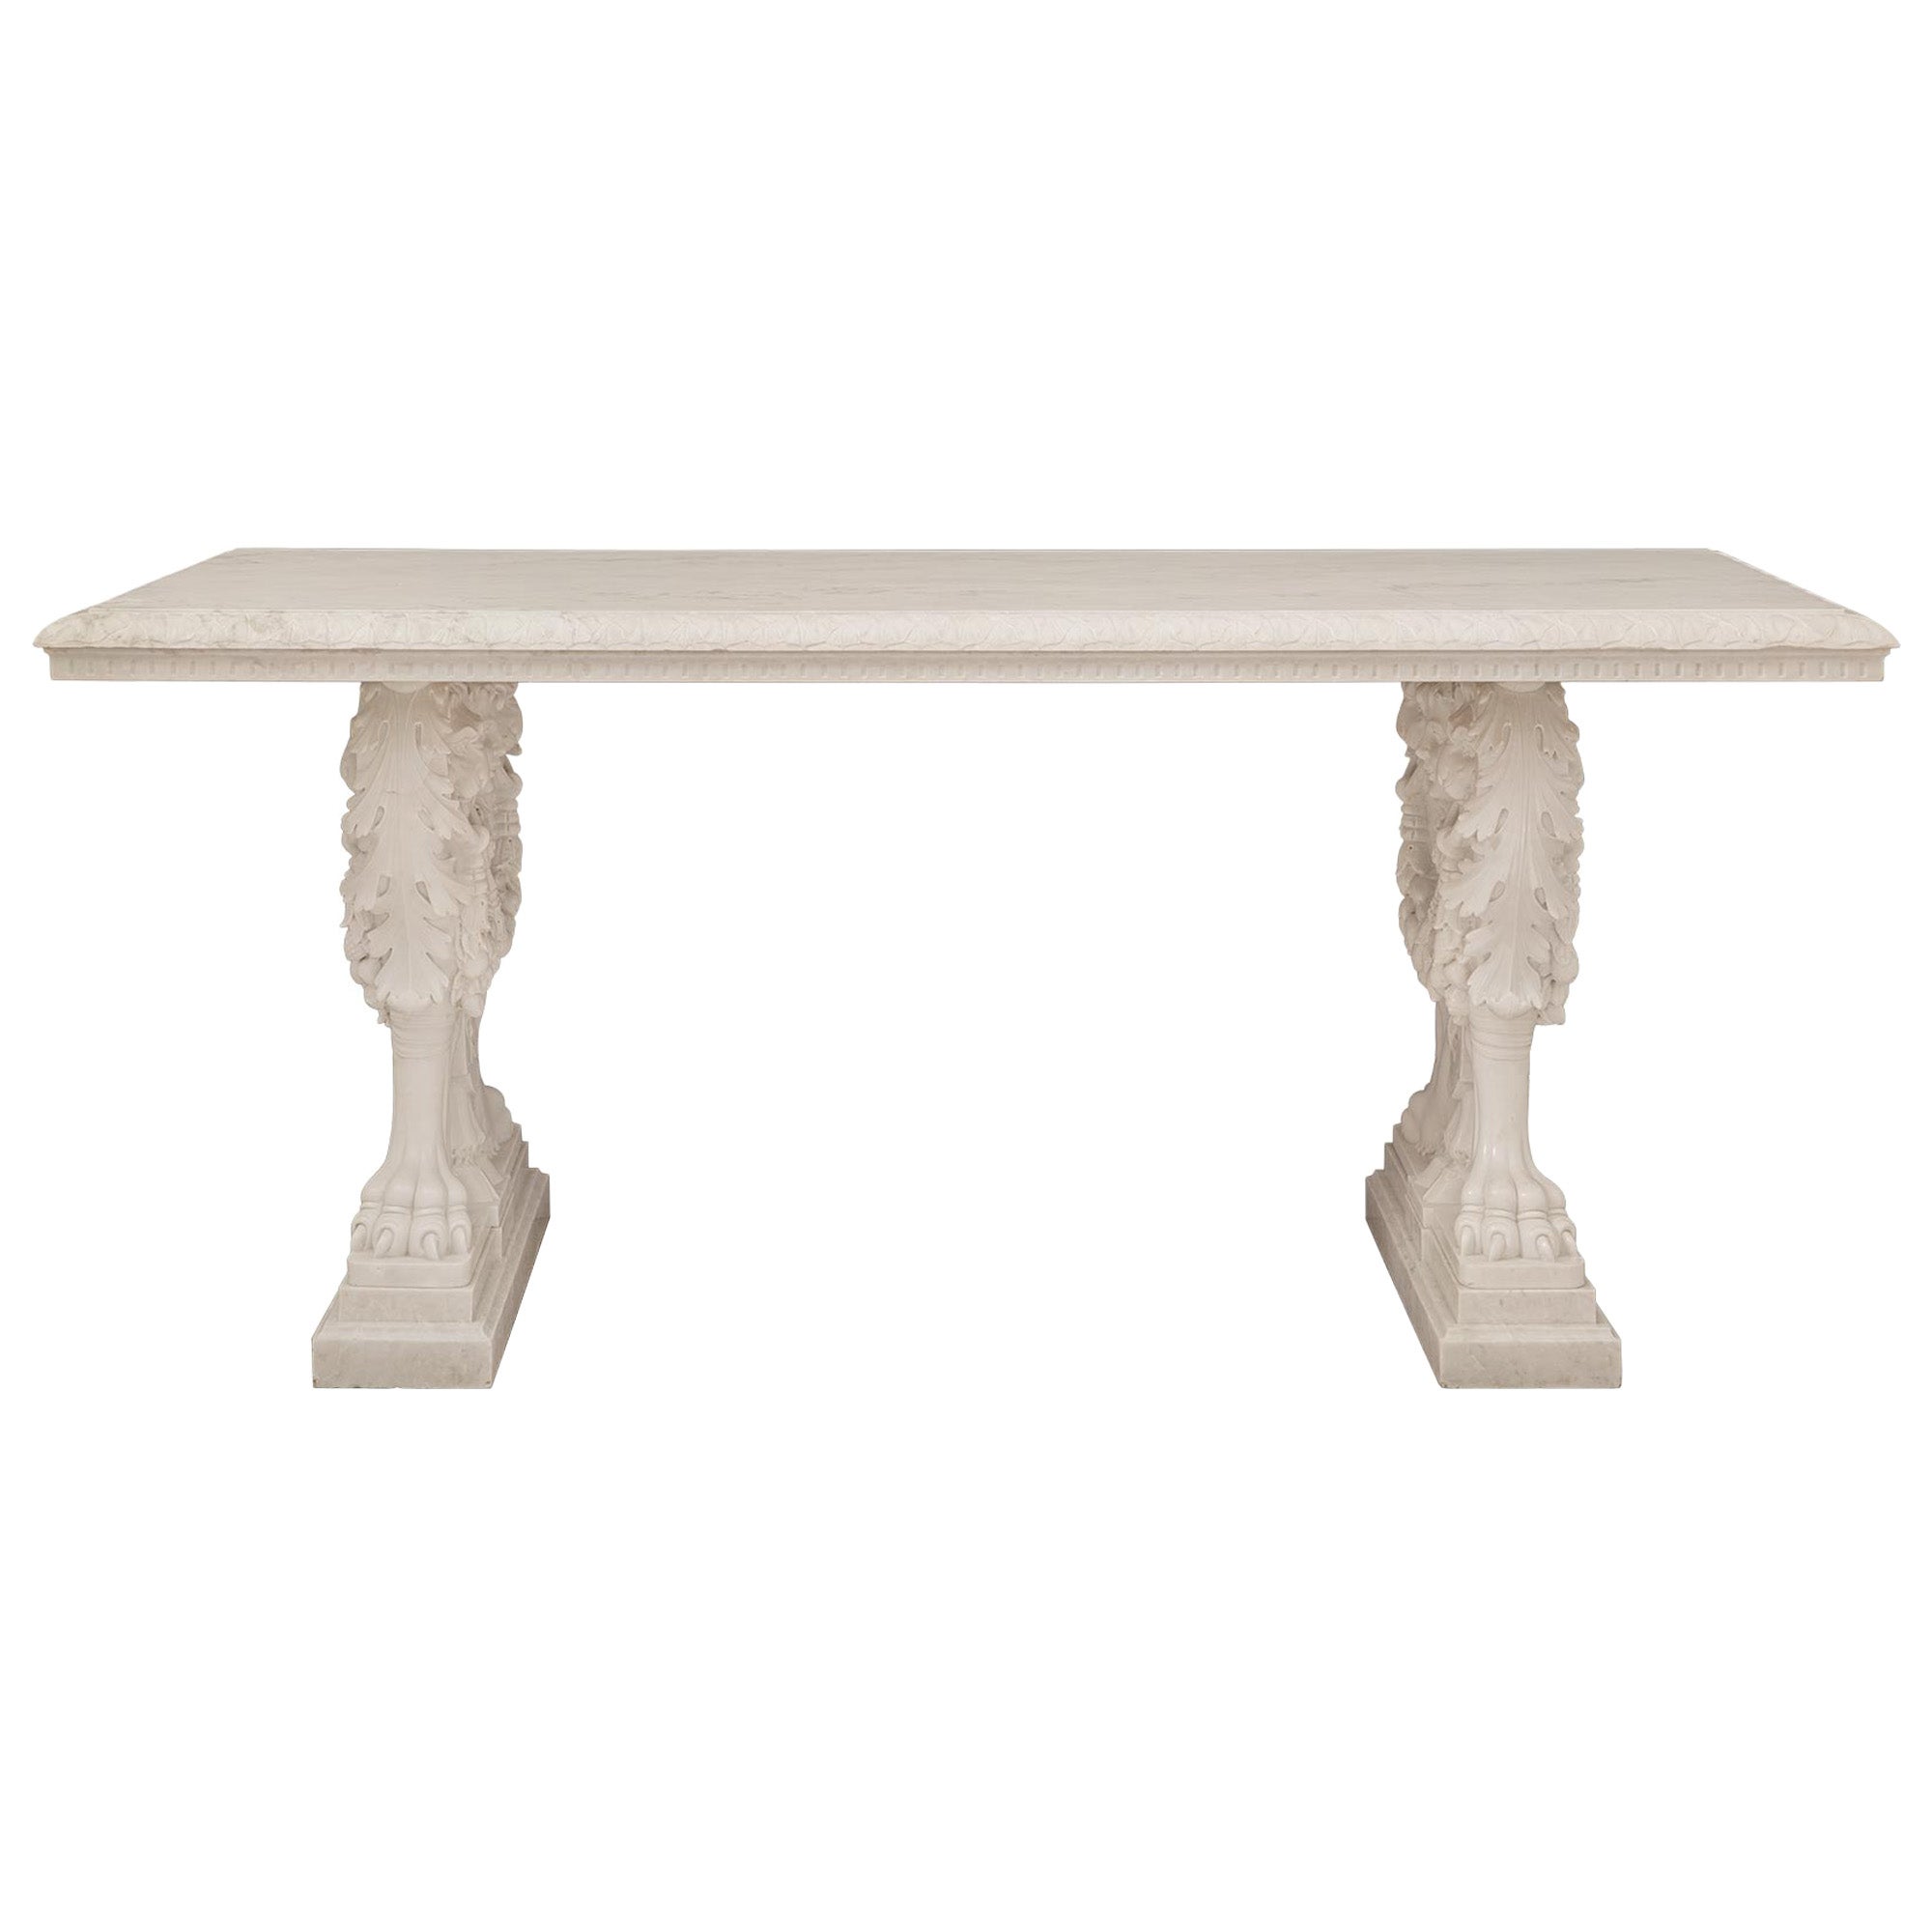 Table centrale italienne néo-classique du 19ème siècle en marbre de Carrare blanc